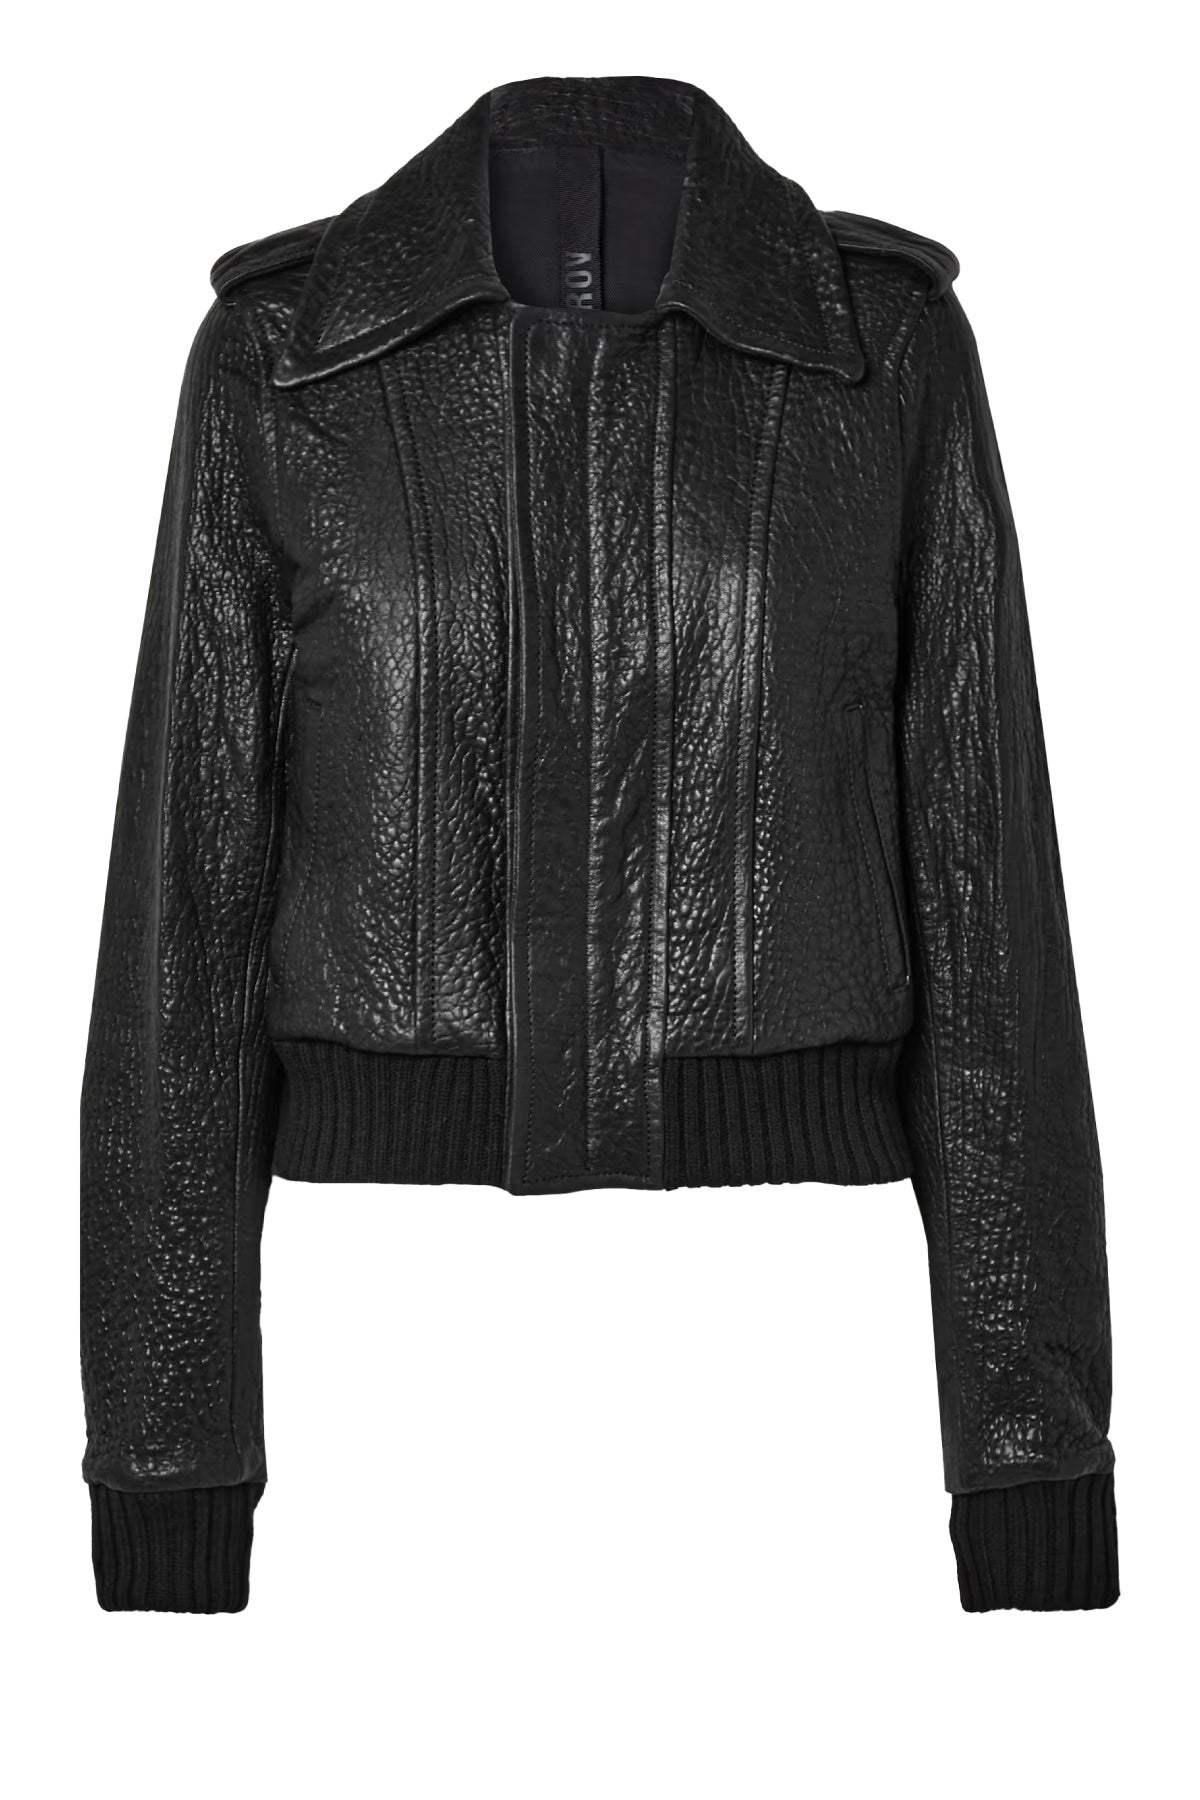 Petar Petrov Mero Textured Leather Jacket - Black